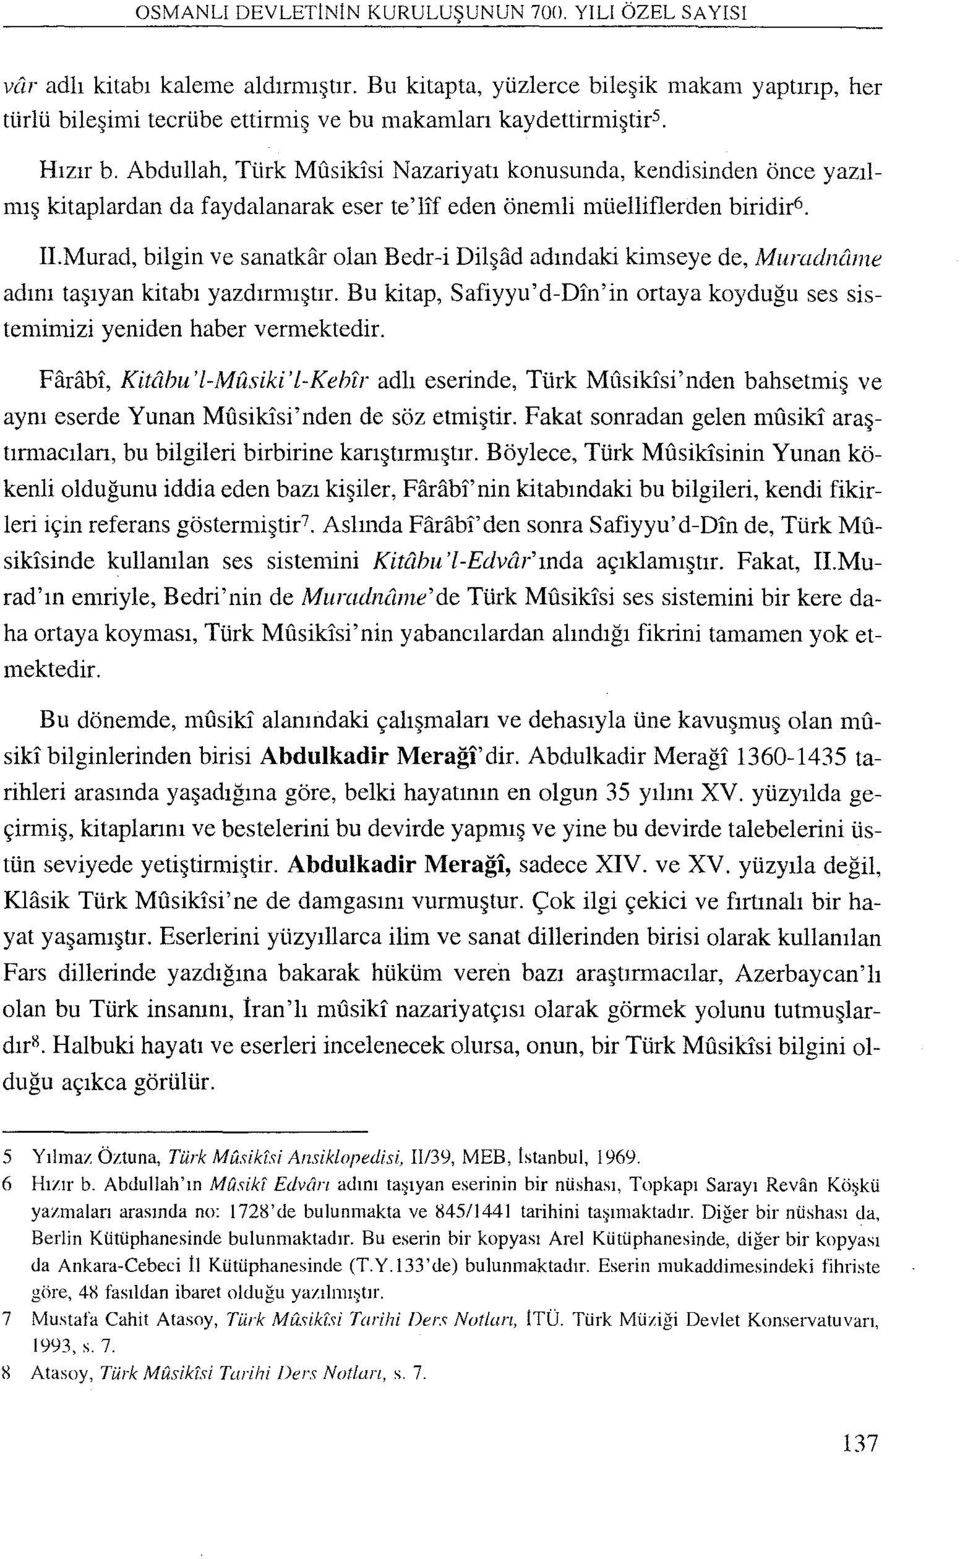 Abdullah, Türk Mı1sikisi Nazariyarı konusunda, kendisinden önce yazılmış kitaplardan da faydalanarak eser te'lif eden önemli müelliflerden biridir6. adını II.